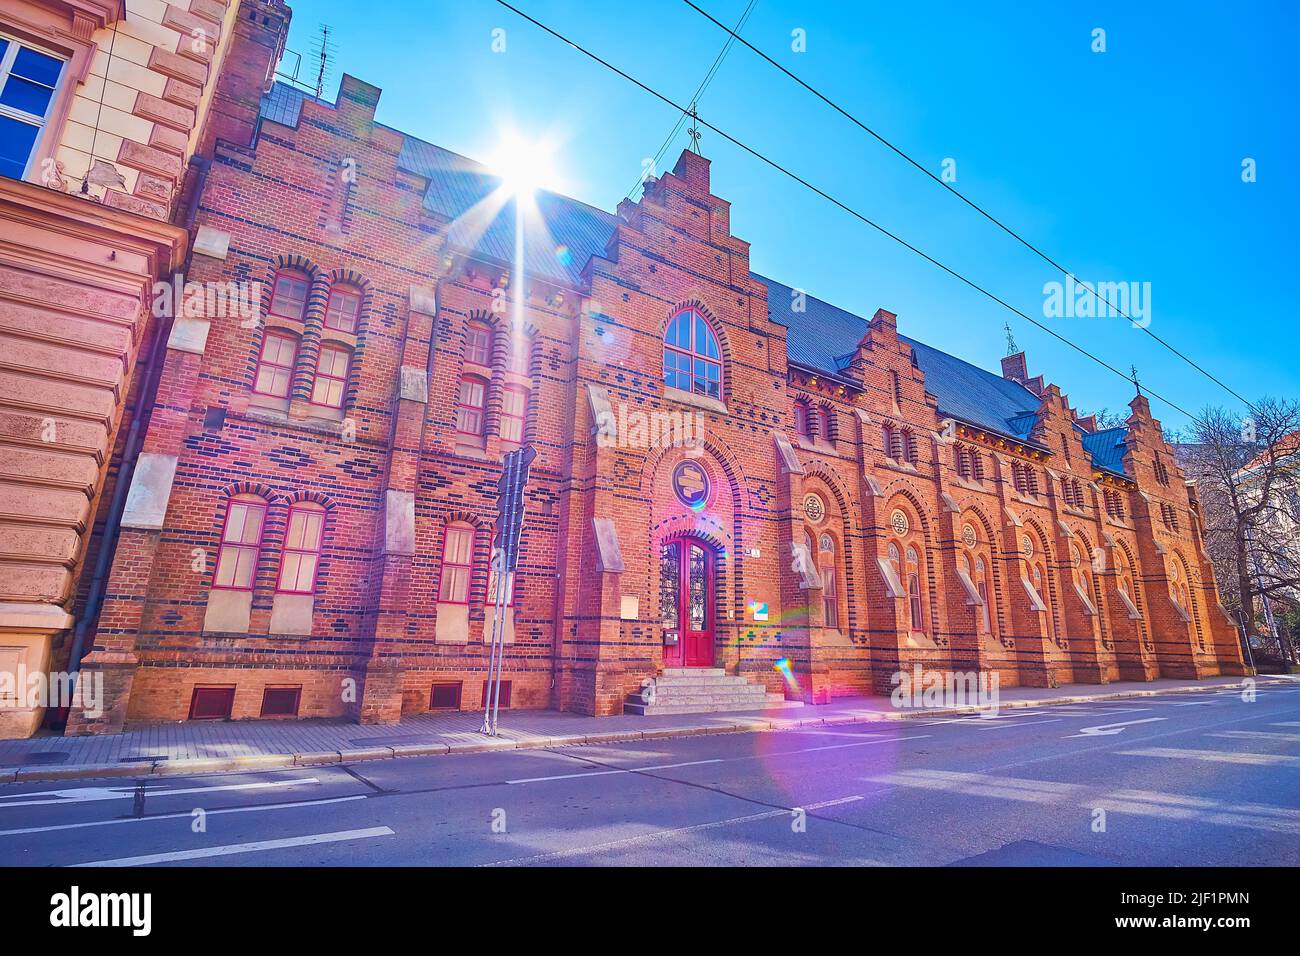 Le magnifique bâtiment historique de style gothique de Brno sert aujourd'hui de club de sport de gym 'Telocvicna Pod Hradem', République tchèque Banque D'Images